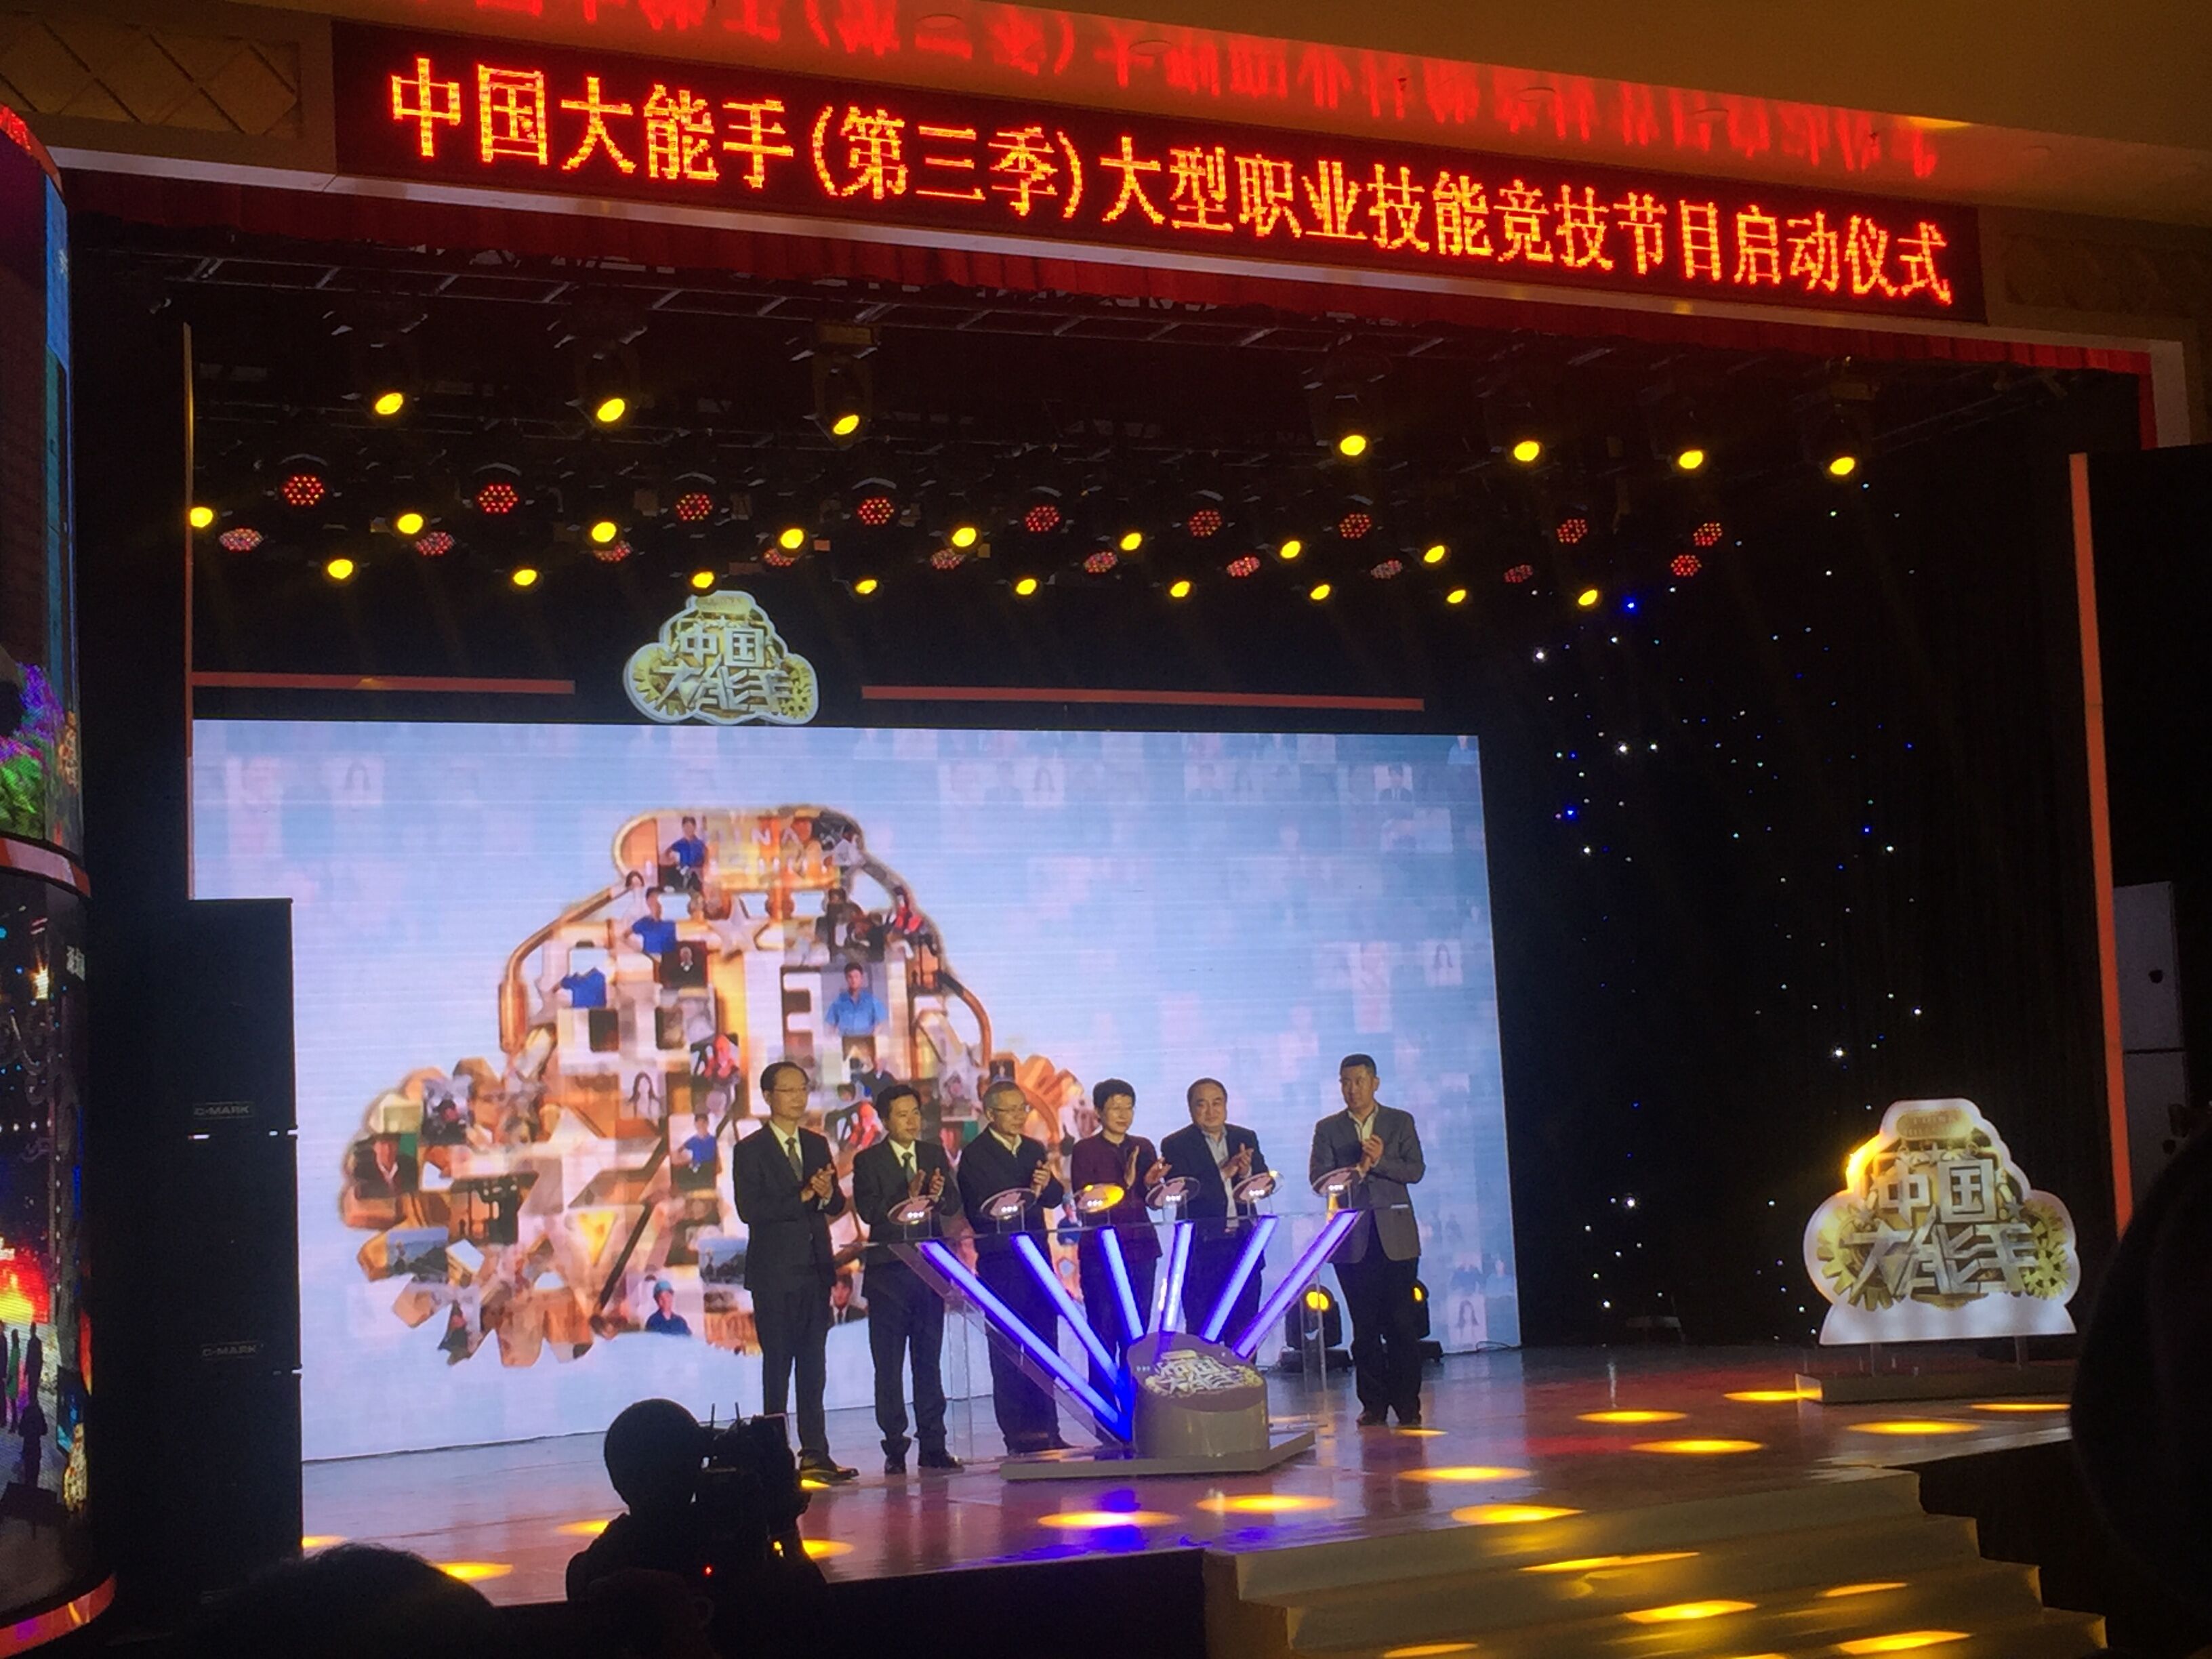 《中国大能手》(第三季)大型职业技能竞技节目今天在济南启动